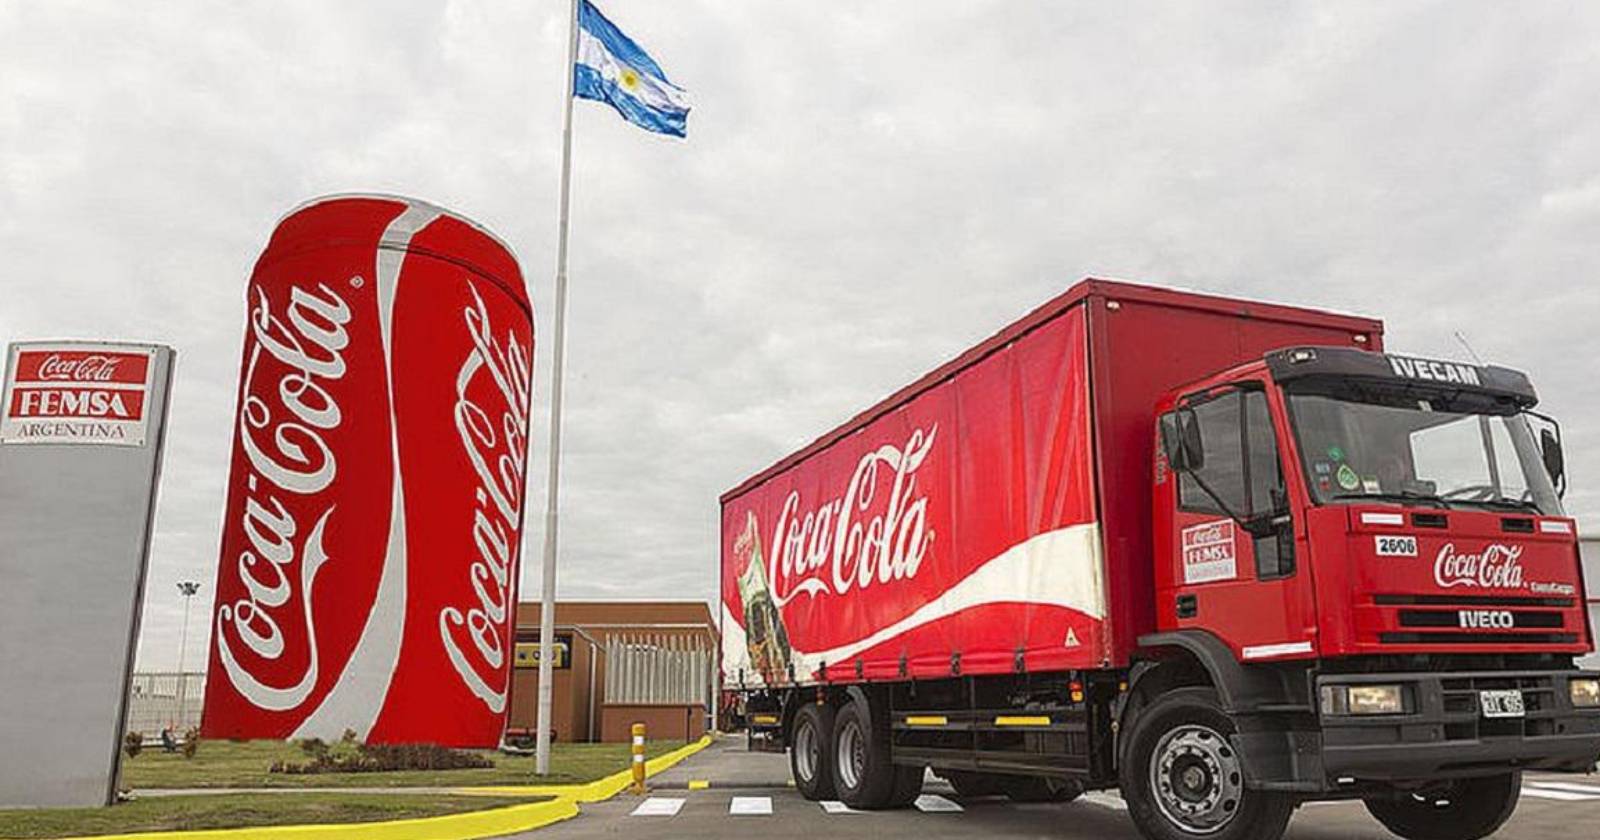 Coca cola Argentina